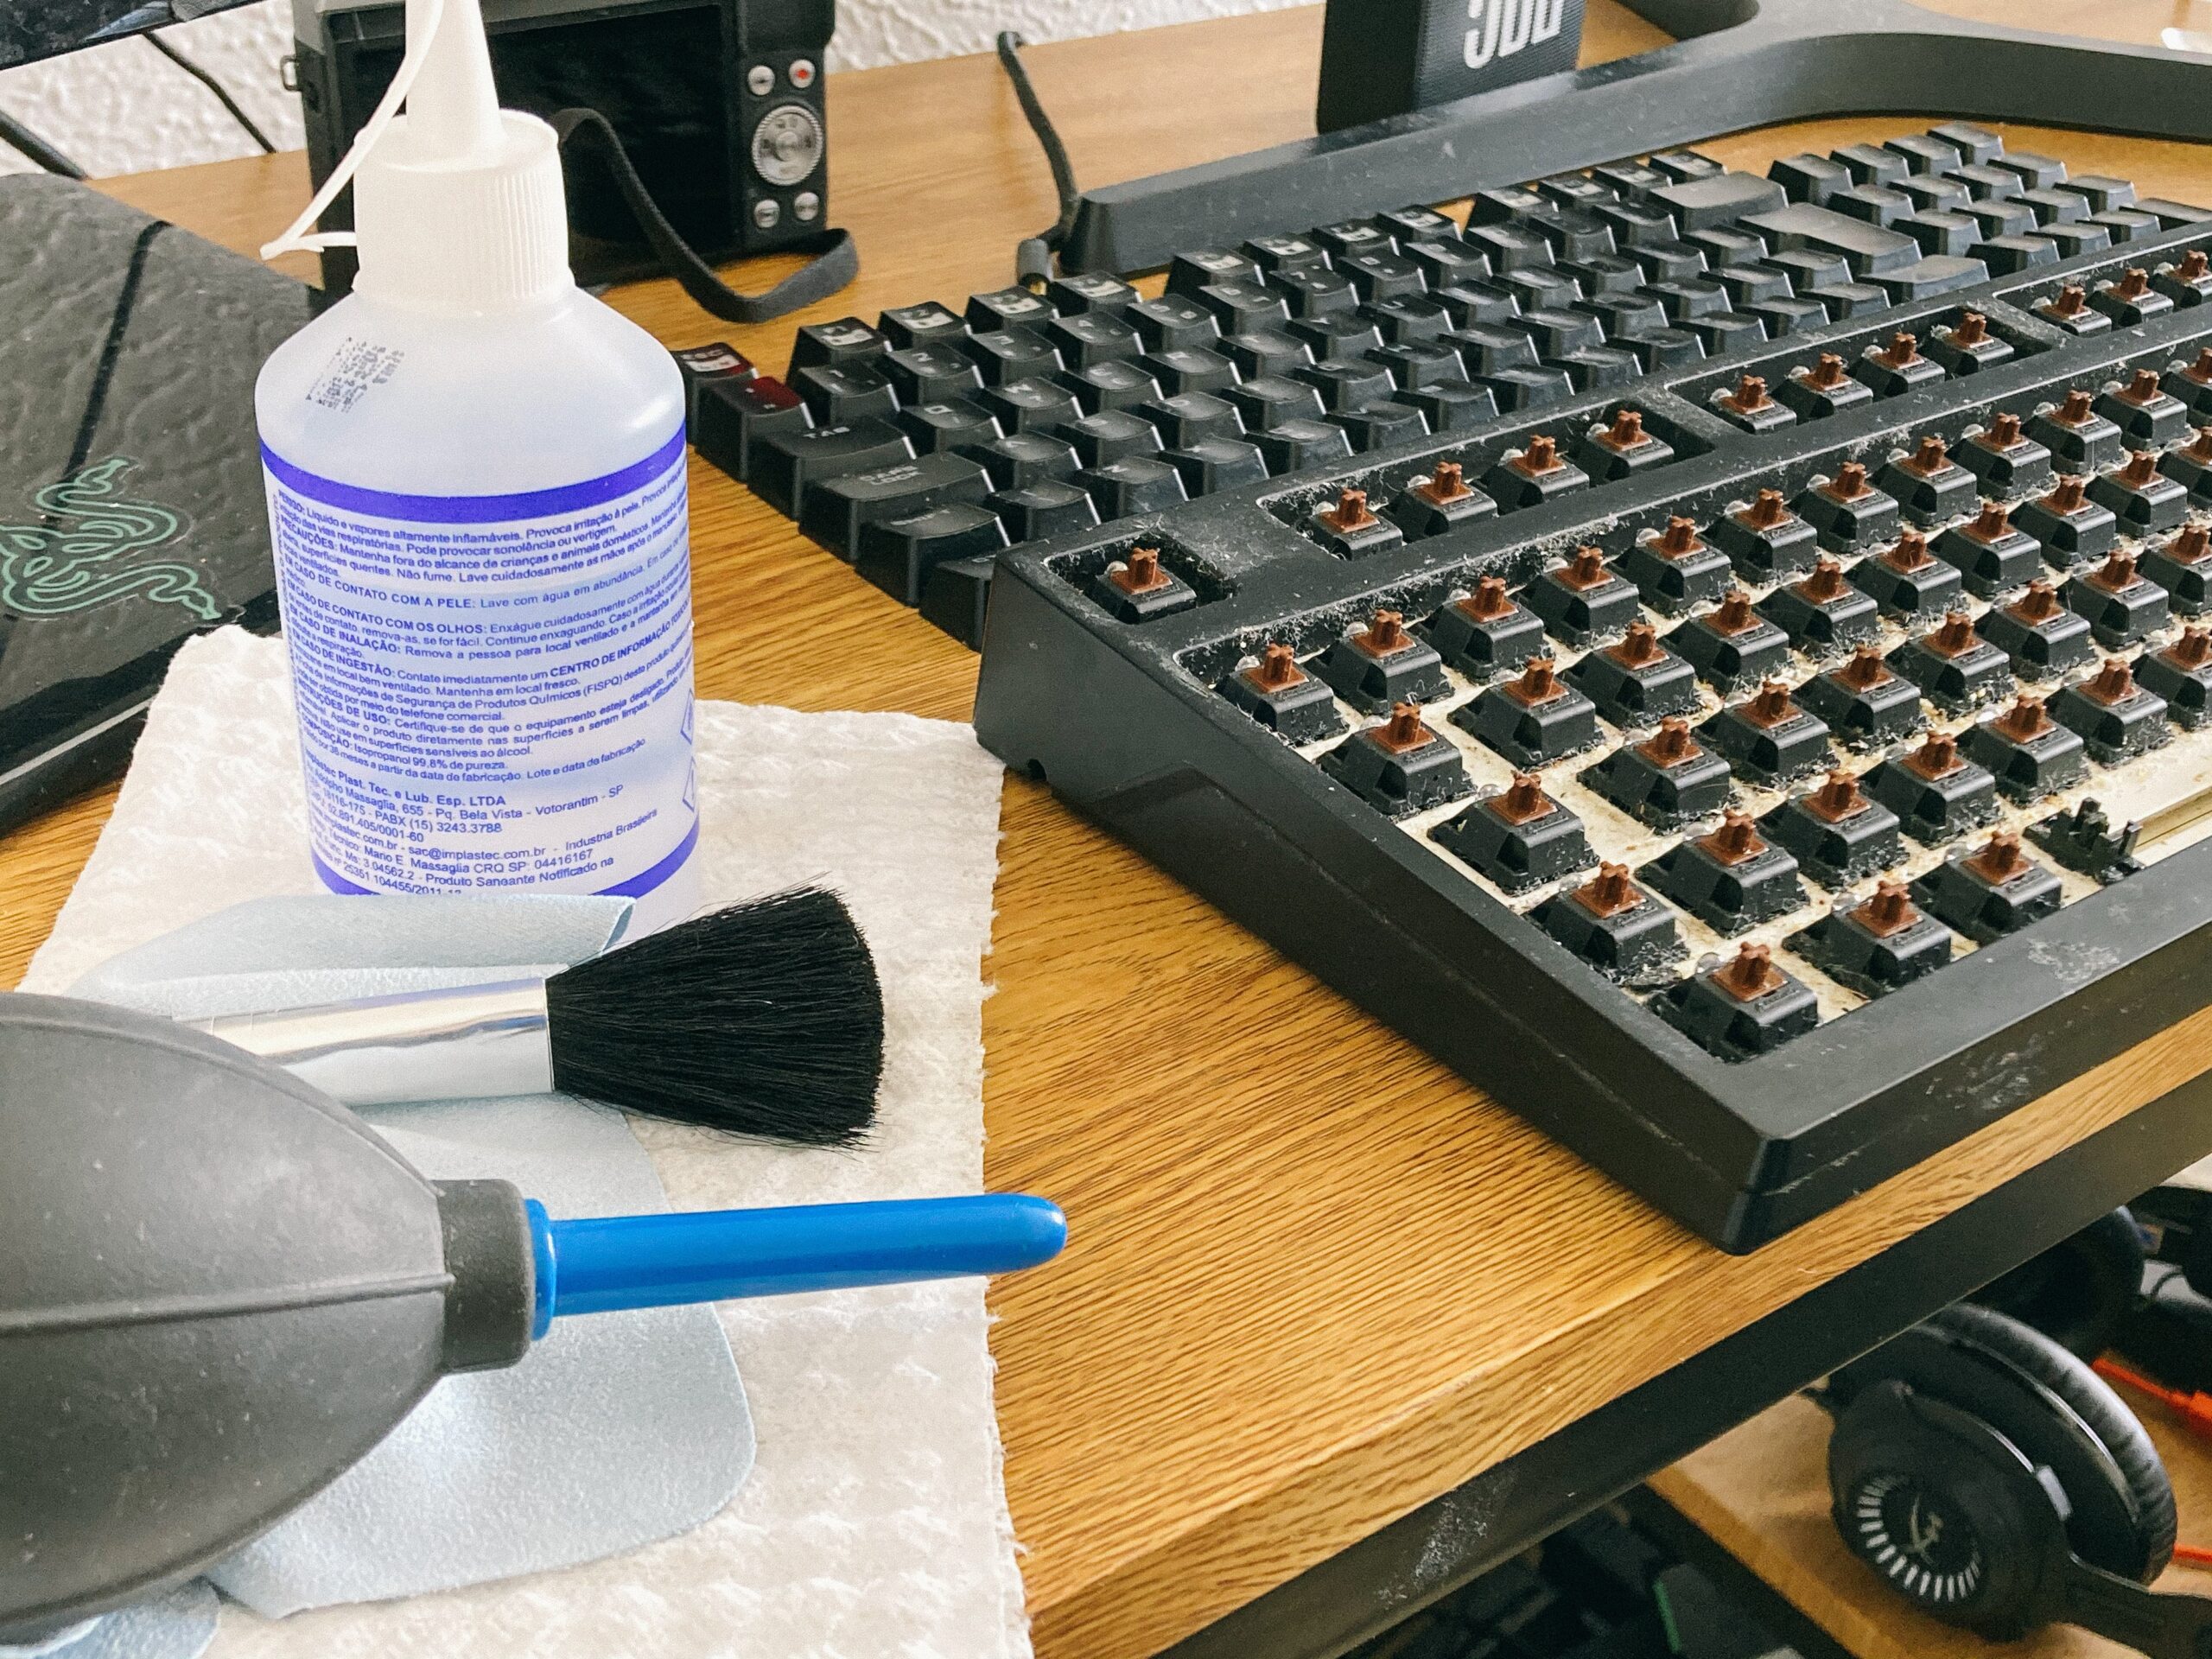 čištění klávesnice